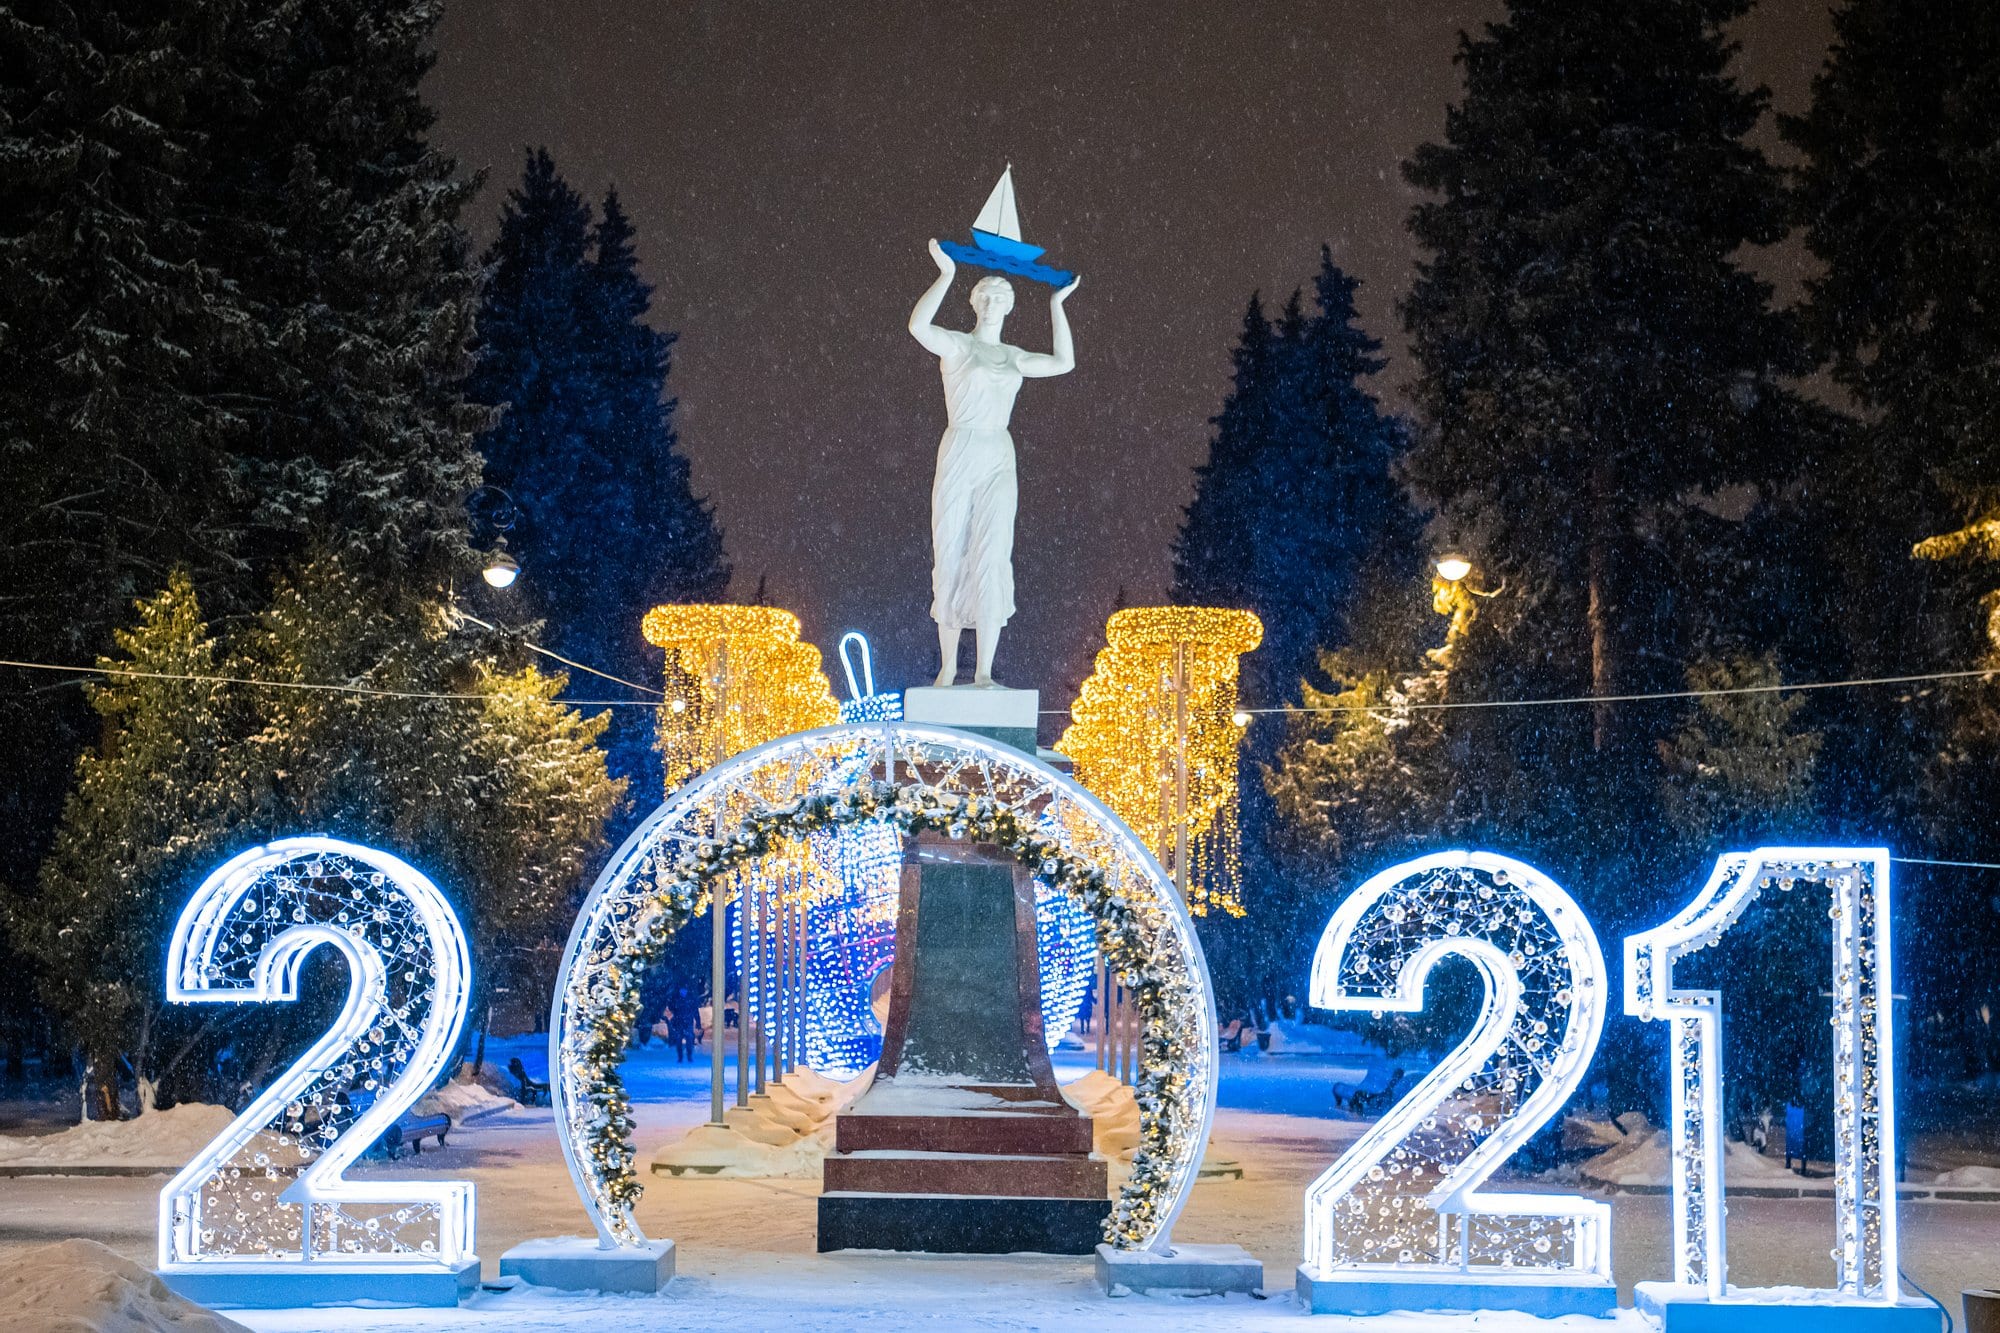 Capodanno 2021: Un anno difficile lasciato alle spalle, tanta speranza augurata per il nuovo anno, da Tuttalativu alla Community e ai lettori